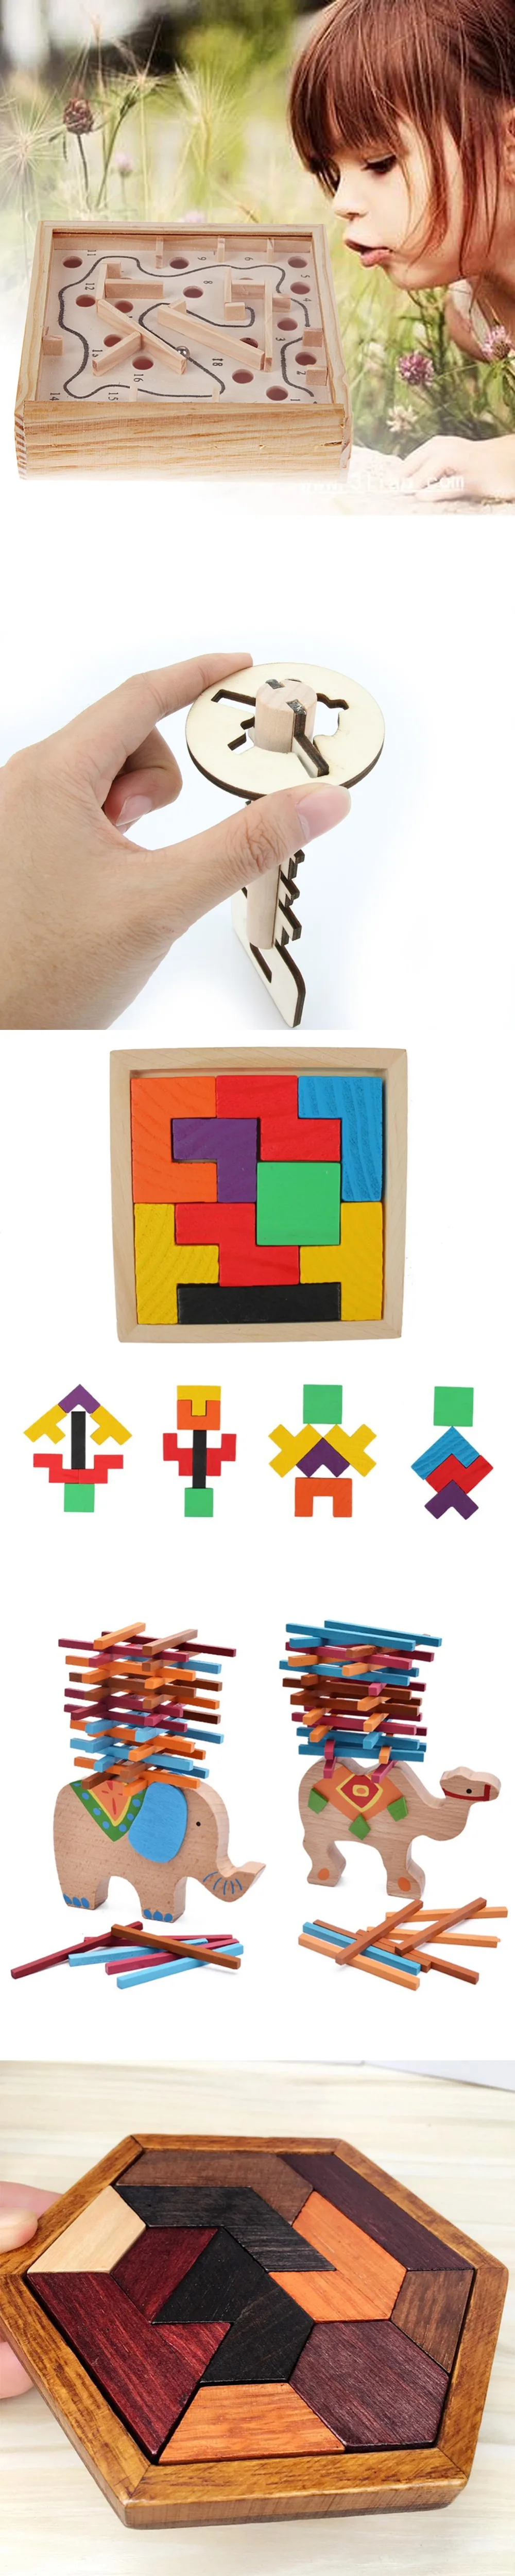 Мульти Стили деревянные Tangram головоломки красочный квадрат IQ игры Логические для развития интеллекта, образовательные Забавные игрушки